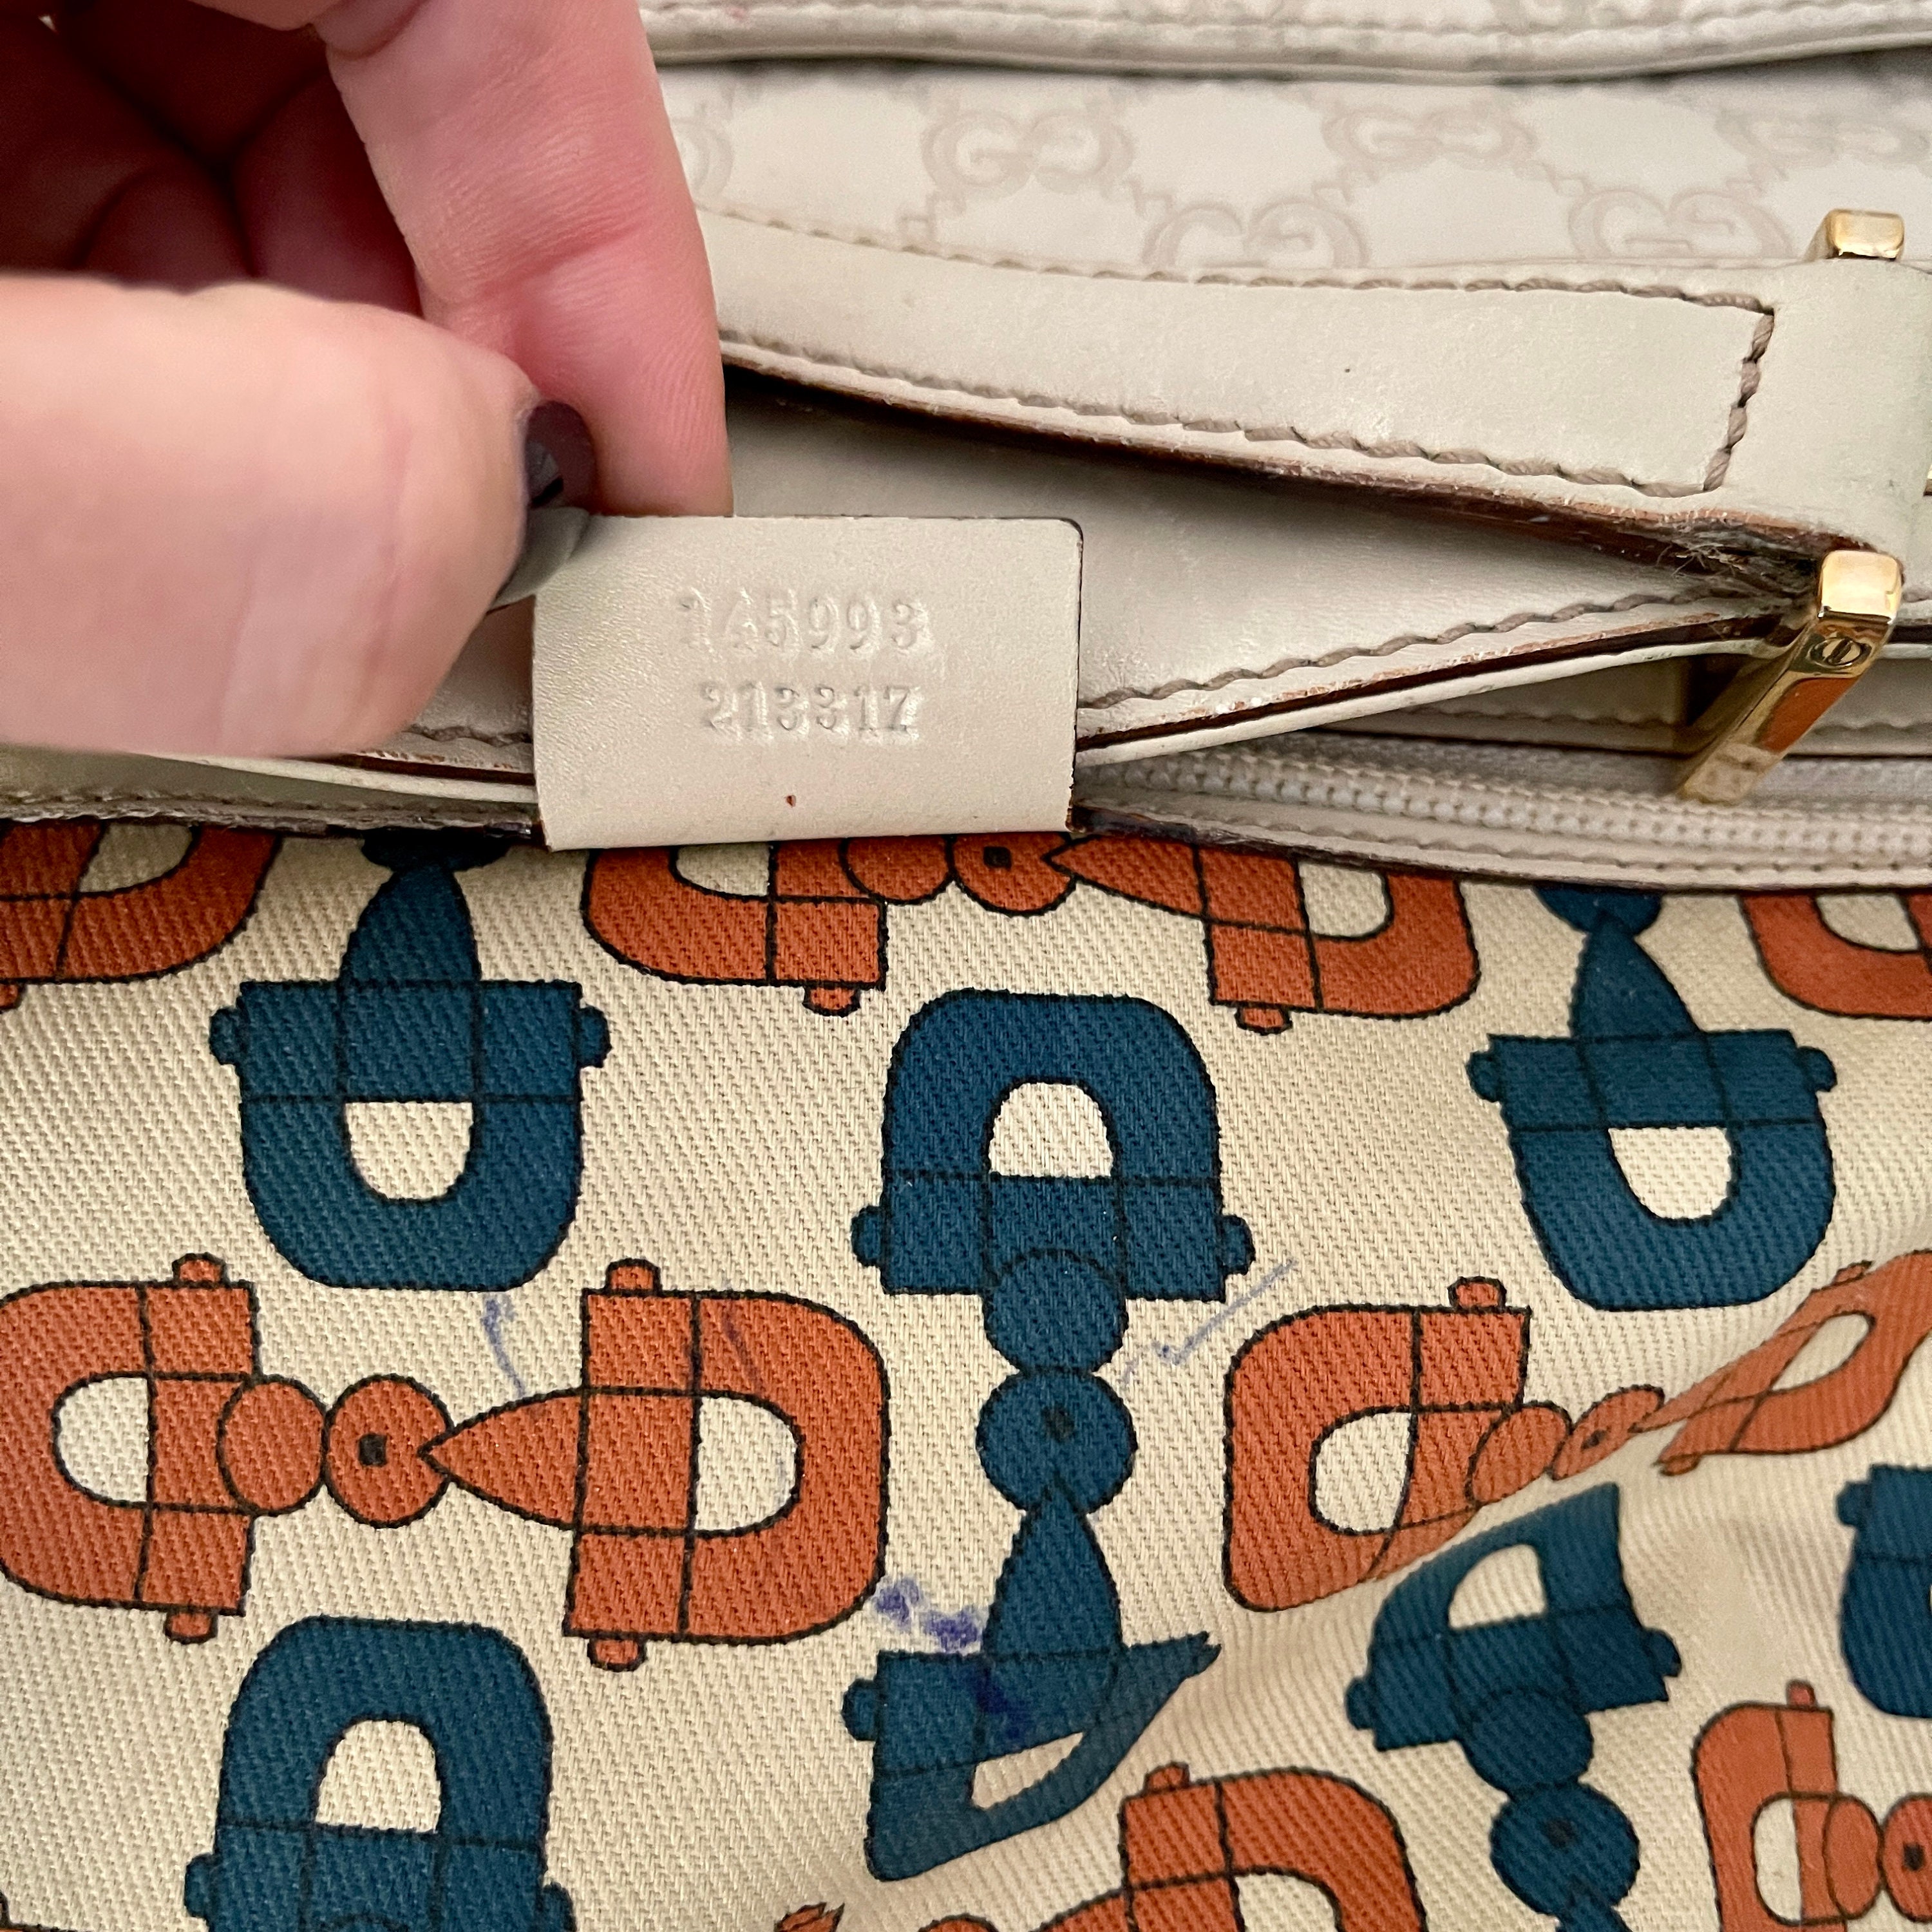 Gucci Vintage Monogram Shoulders Bag